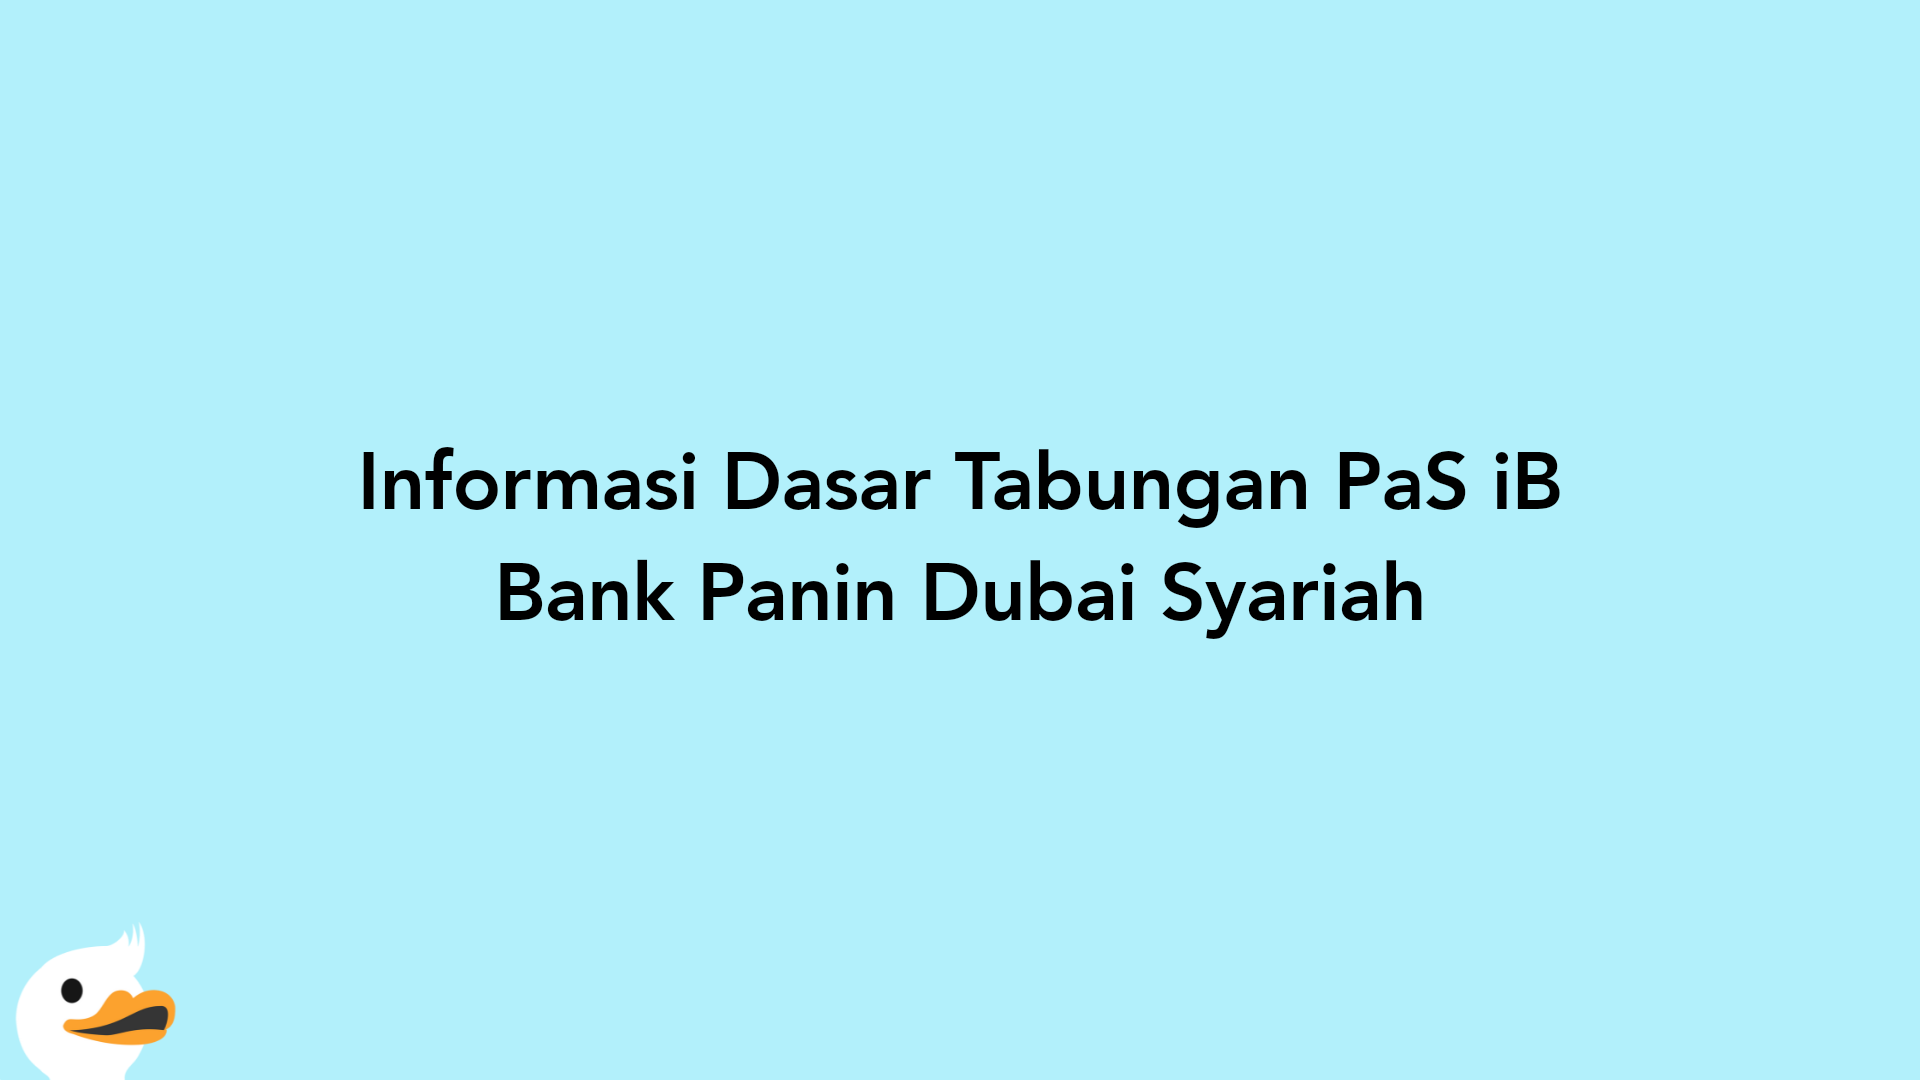 Informasi Dasar Tabungan PaS iB Bank Panin Dubai Syariah